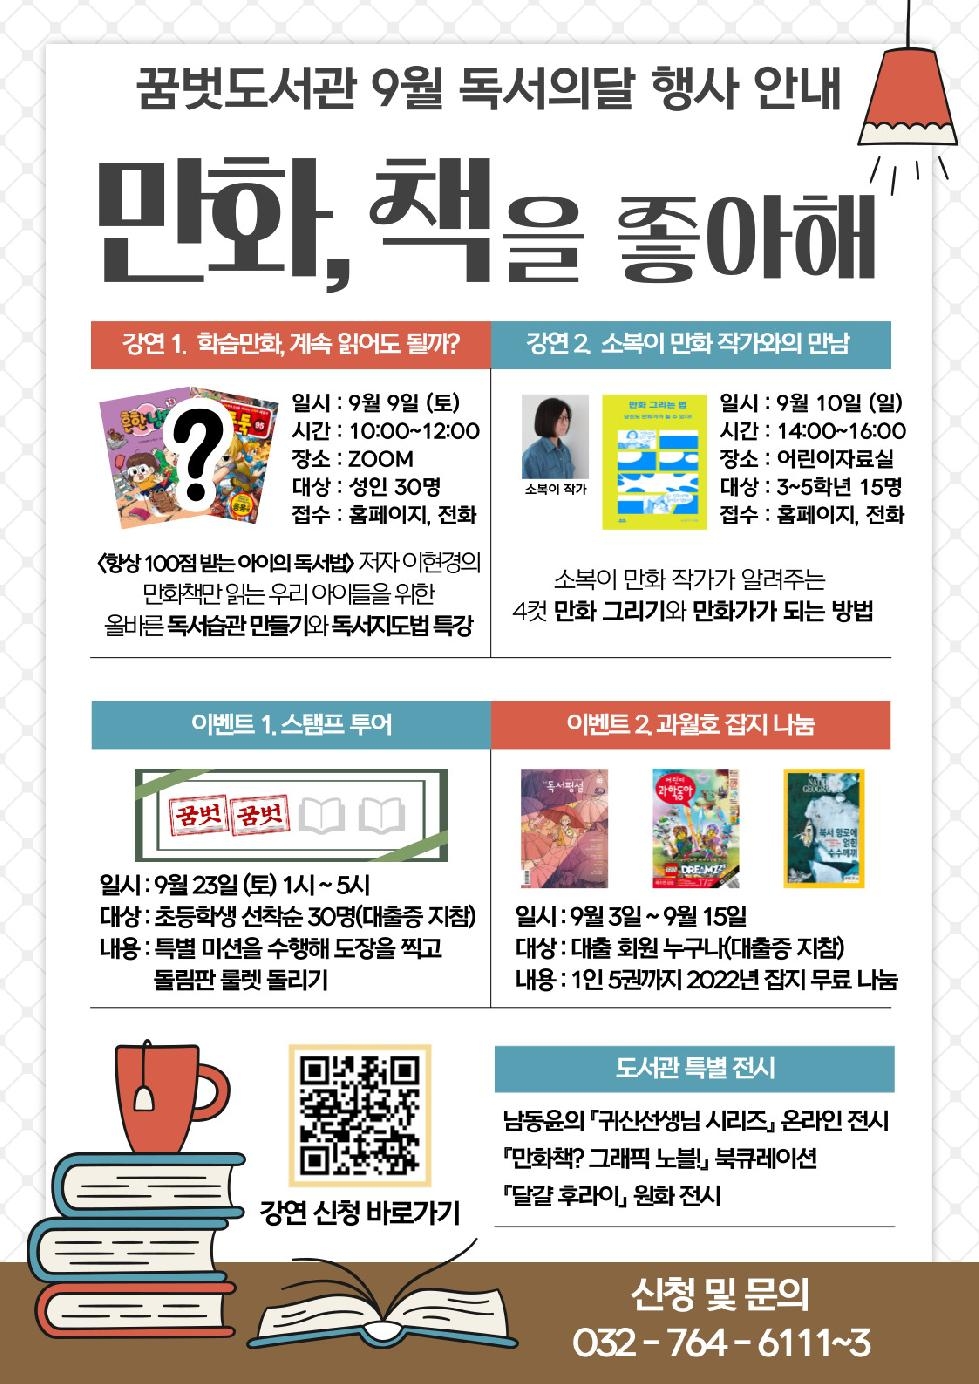 인천 중구 꿈벗도서관, 남녀노소 좋아하는 만화 주제로 ‘독서의 달 행사’